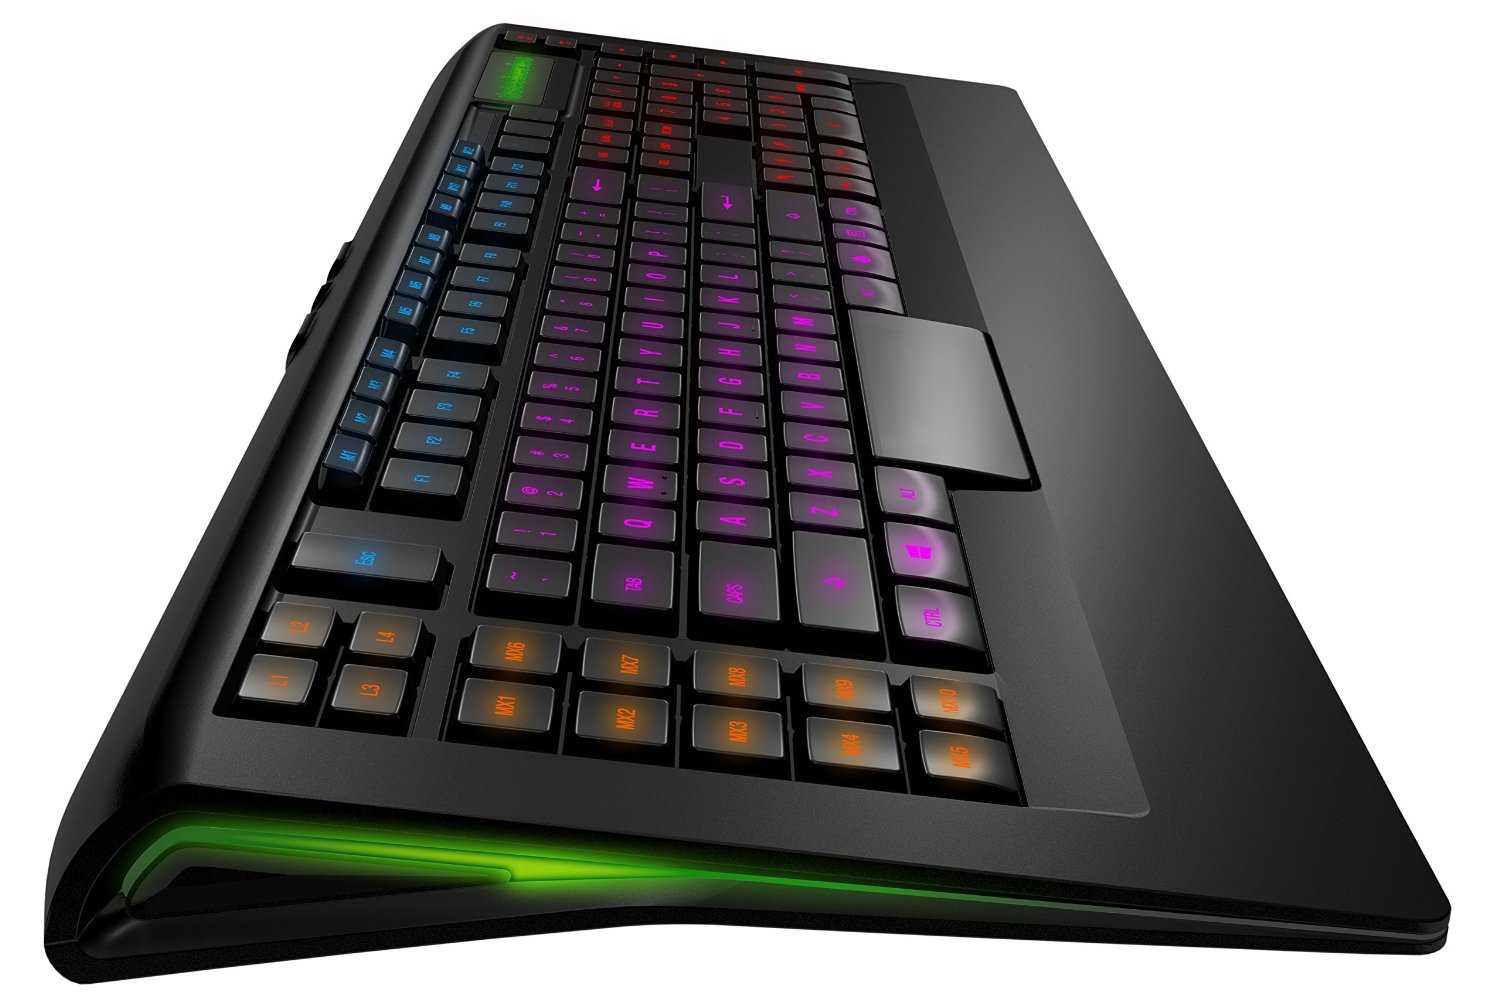 Клавиатура steelseries apex [raw] gaming keyboard black usb (черный) купить за 5990 руб в екатеринбурге, отзывы, видео обзоры и характеристики